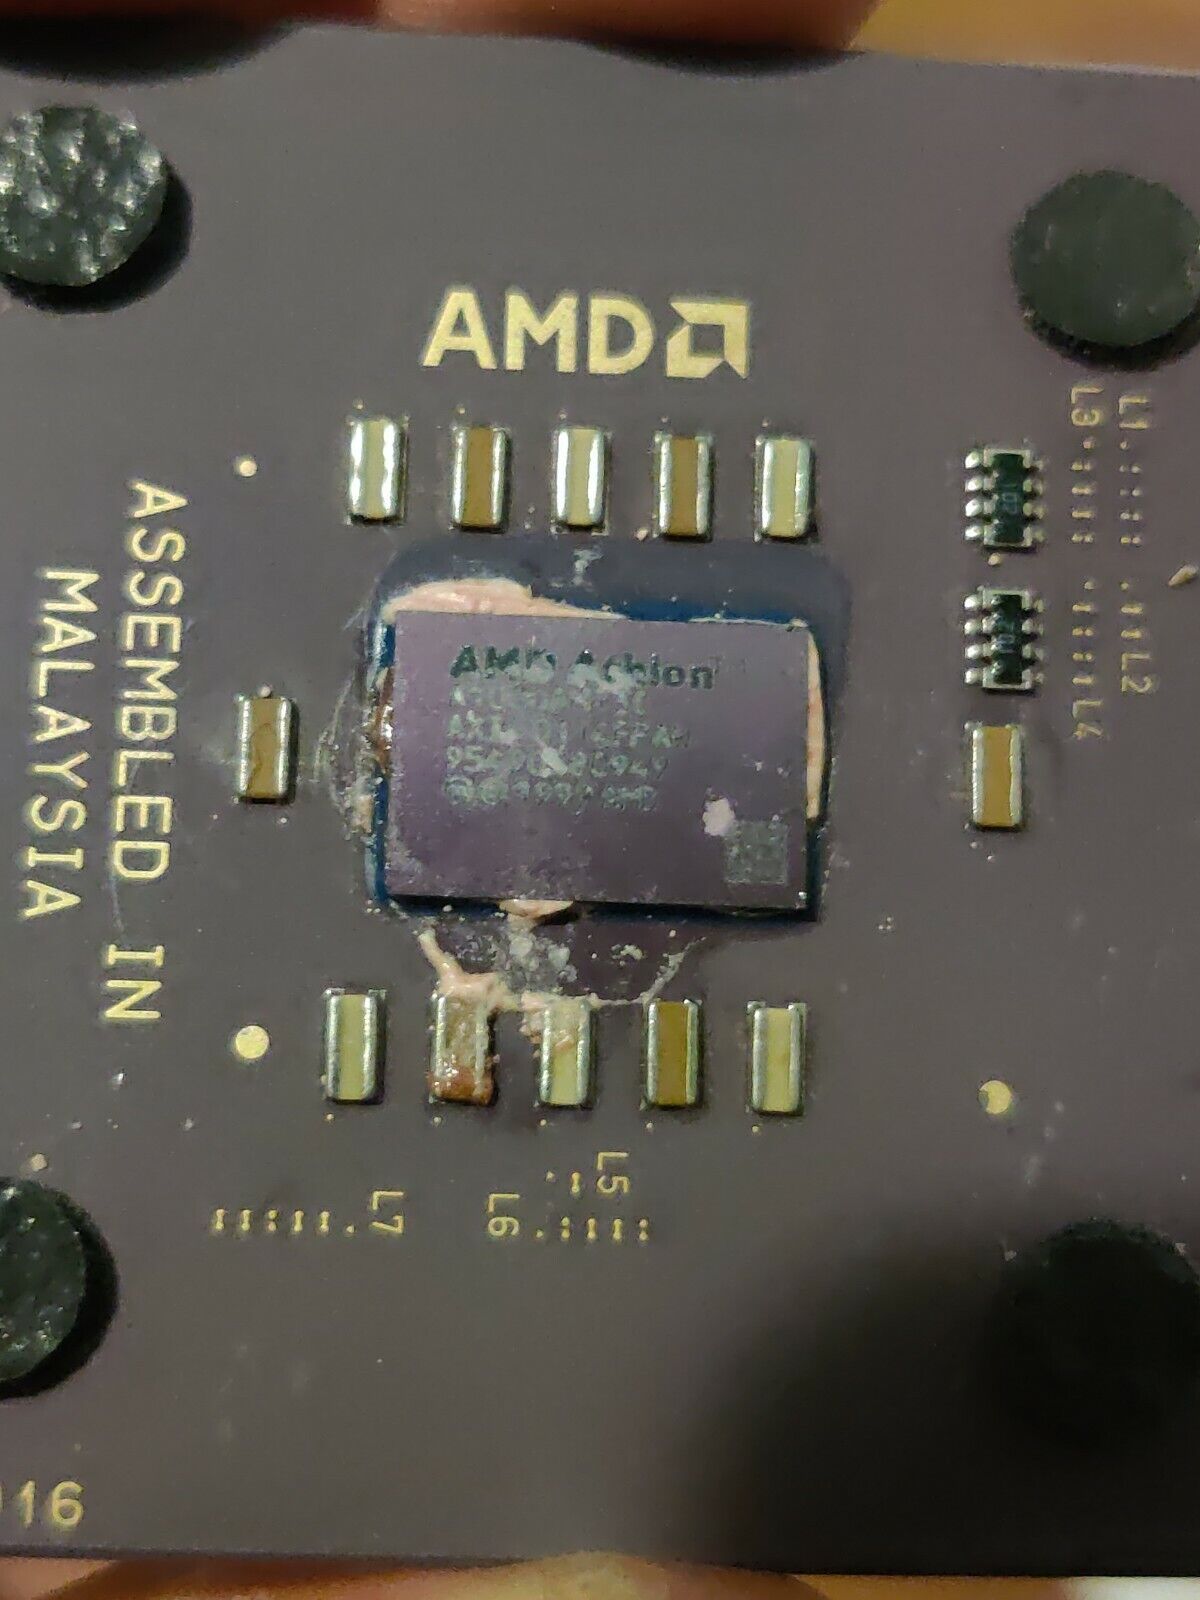 A1000AMT3B - AMD Athlon 1000 1.00GHz 200MHZ 256KB Cache Processor Socket A